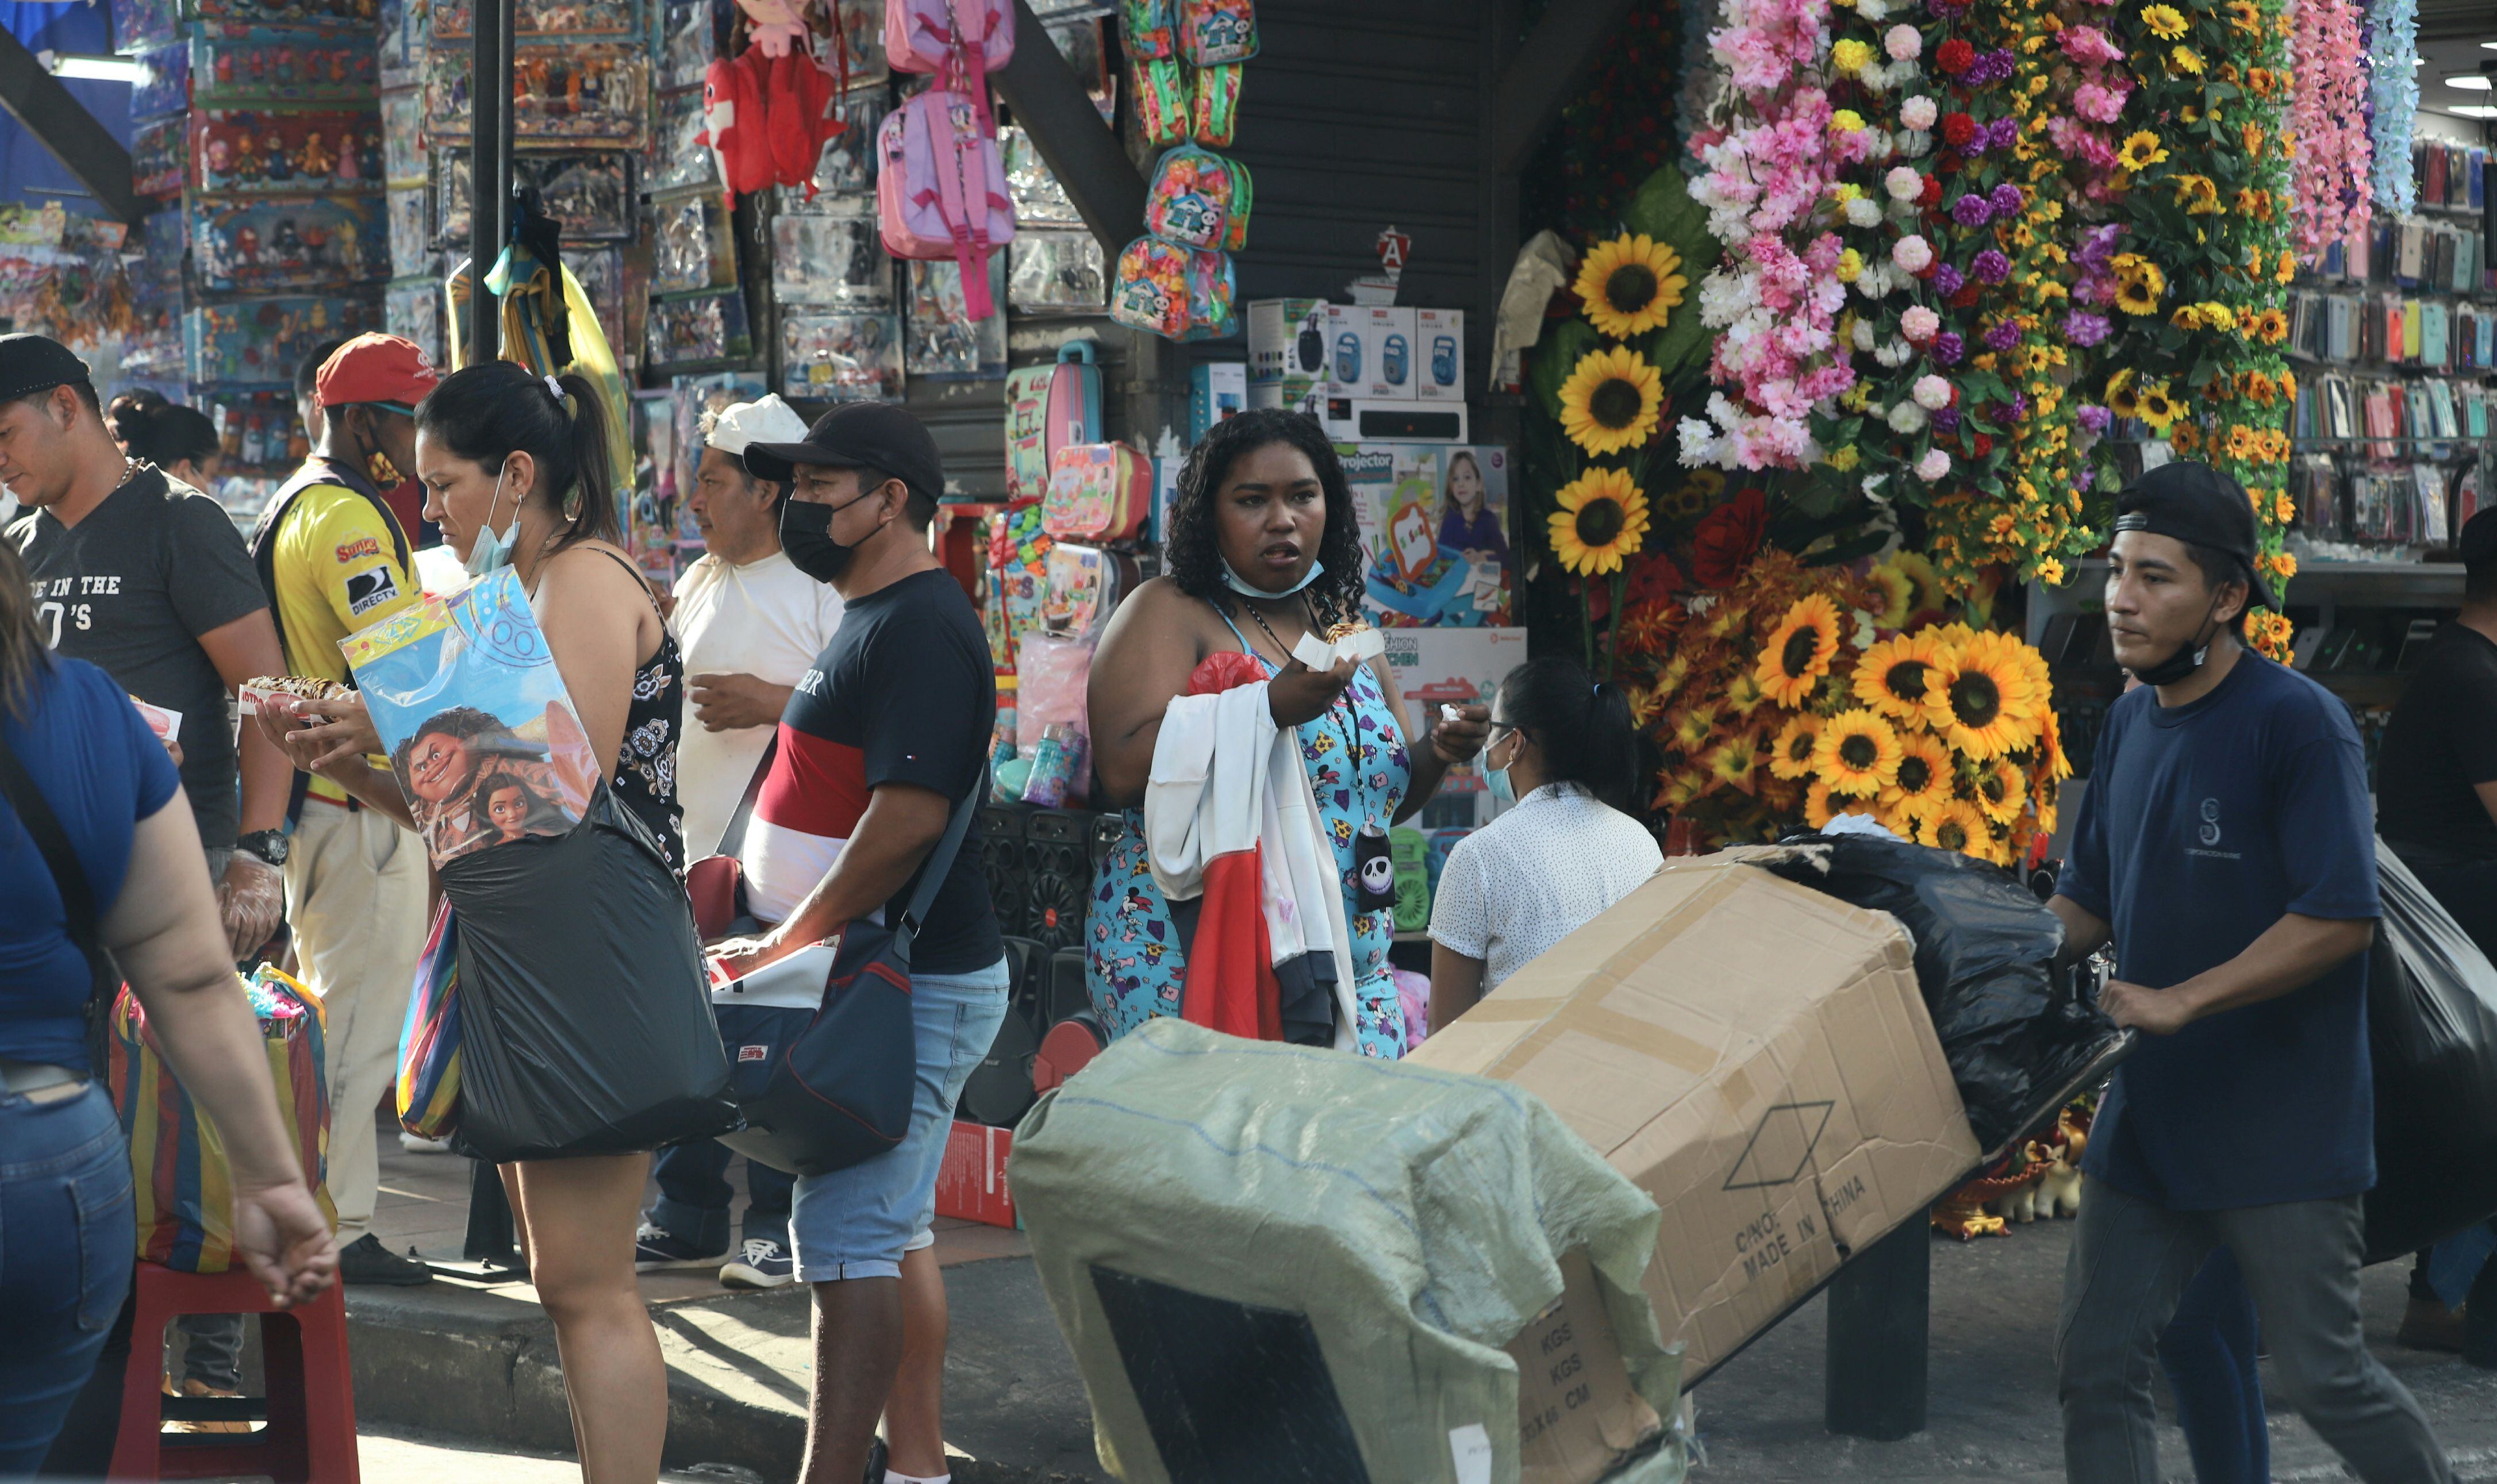 El comercio se mueve a diario en la Bahía, centro de Guayaquil, incluso en días considerados 'flojos' para las ventas como los miércoles. El movimiento en esta zona es constante e intenso. Foto: José Beltrán